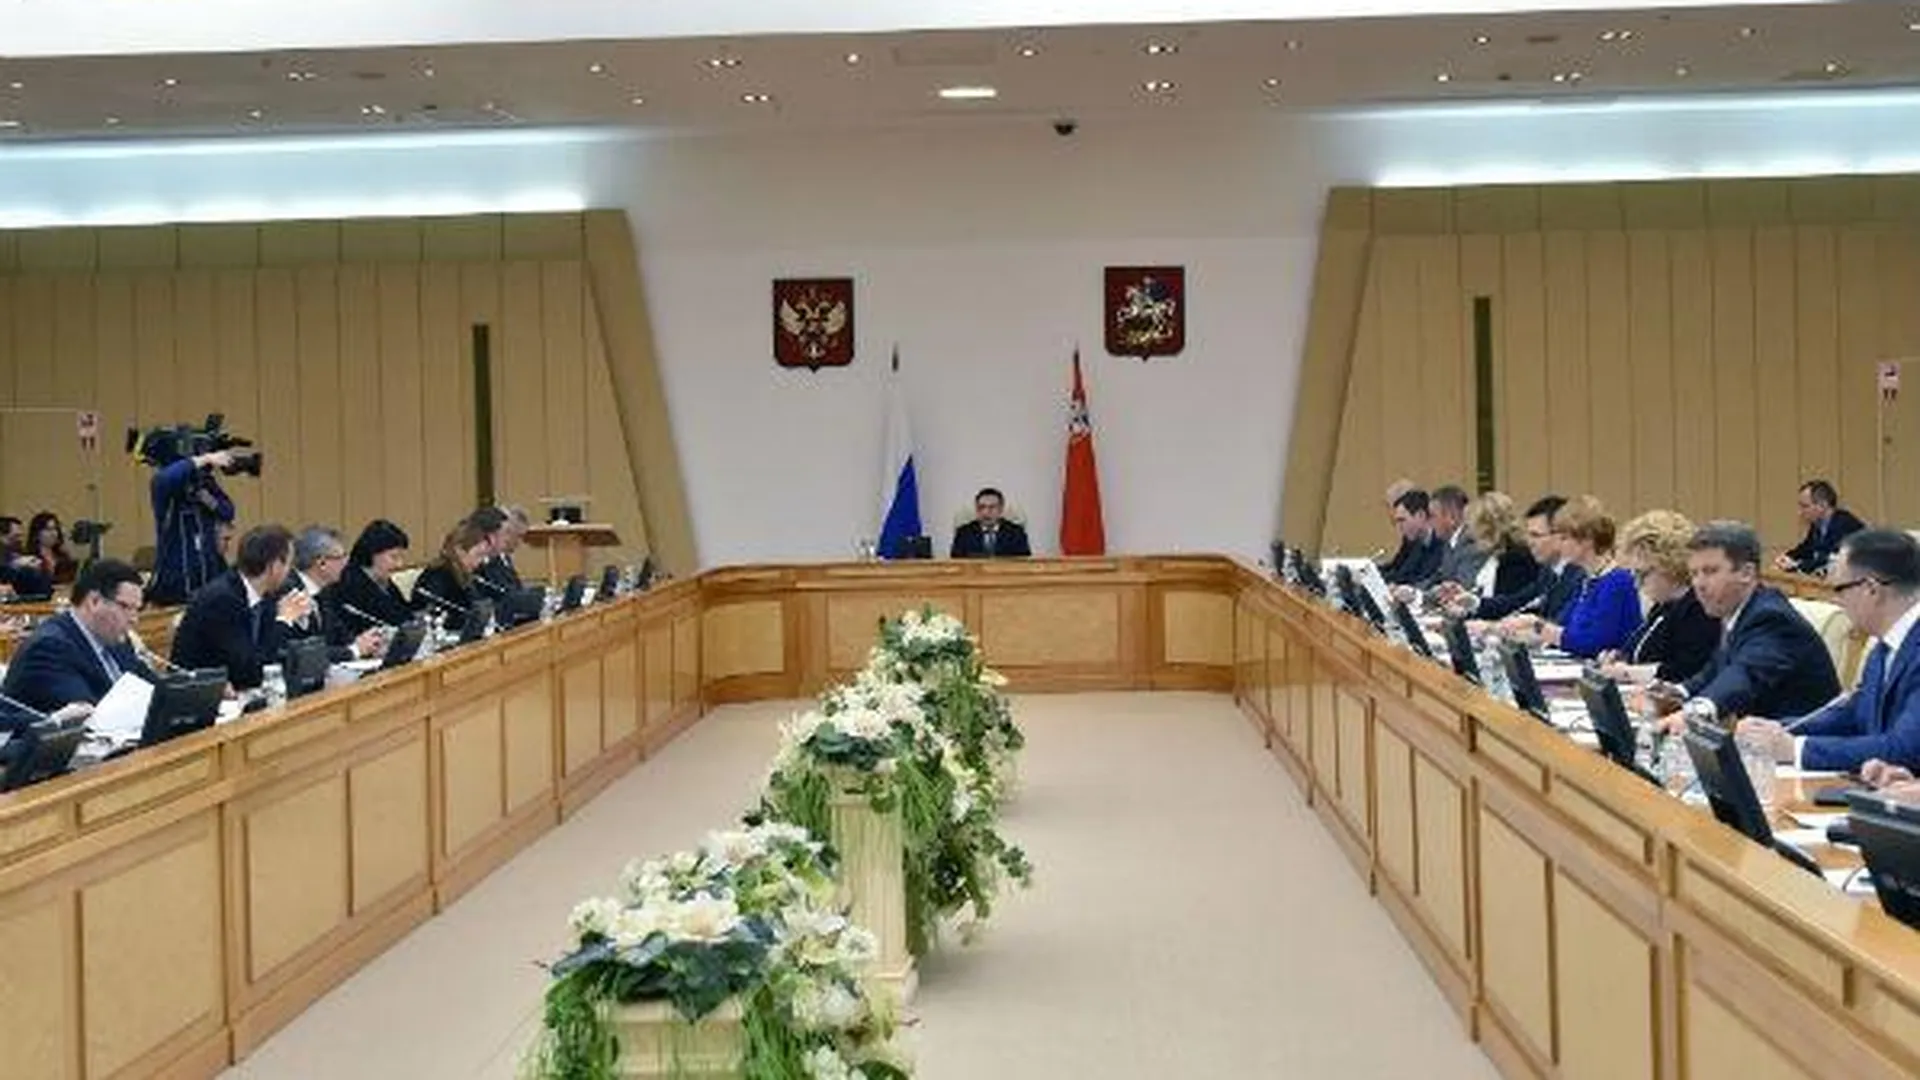 Власти обсудят создание госзаказника «Осенка» в Коломенском районе